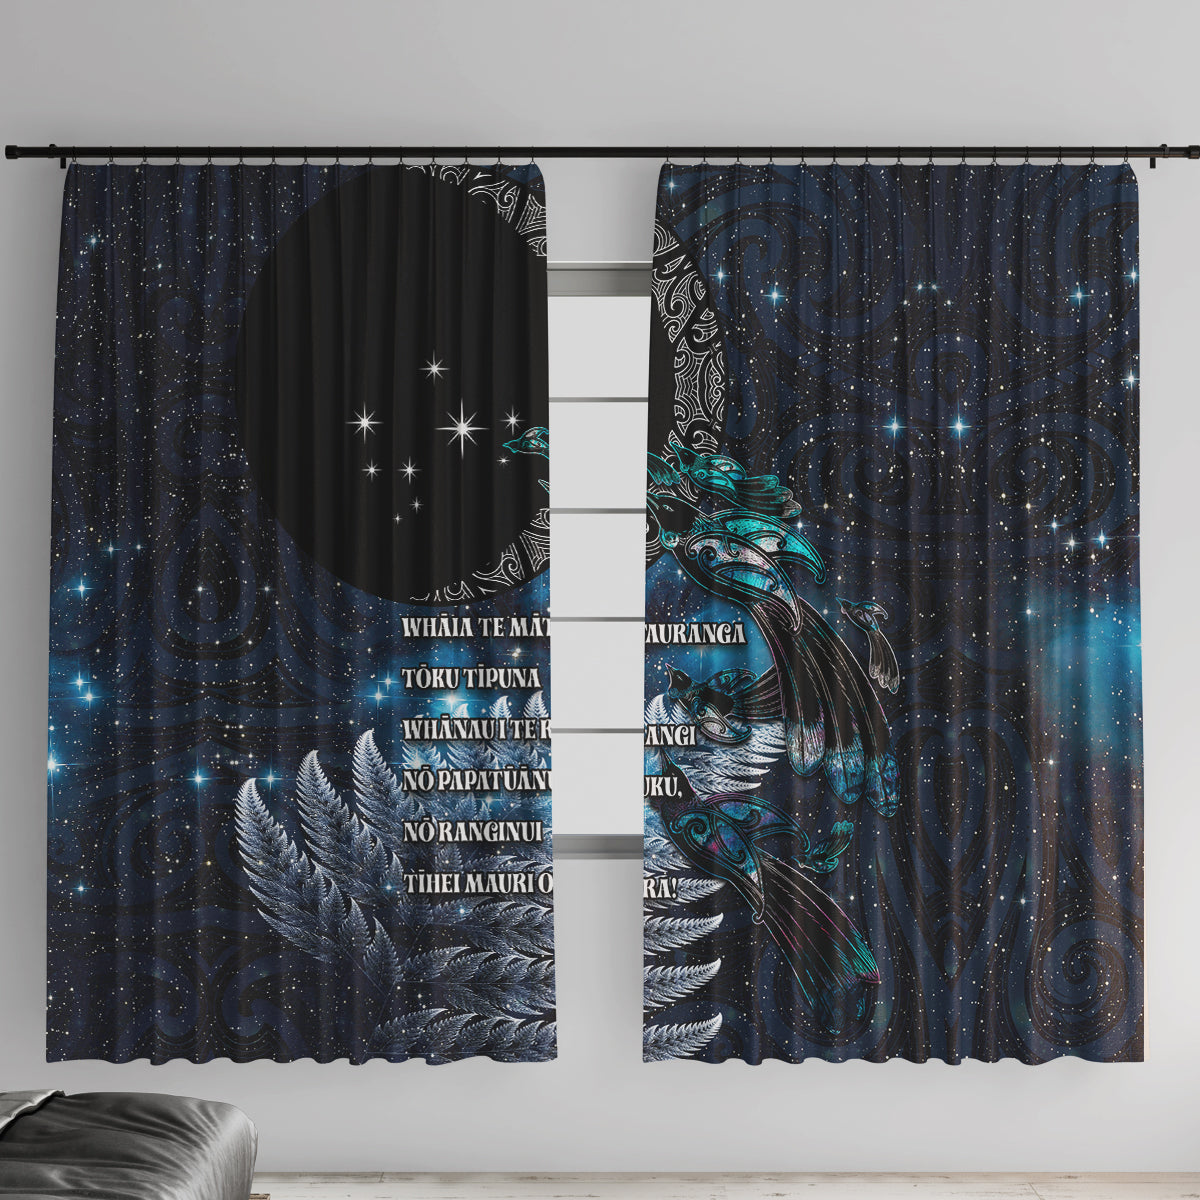 New Zealand Tui Bird Window Curtain Matariki Poetry Pattern Galaxy Style